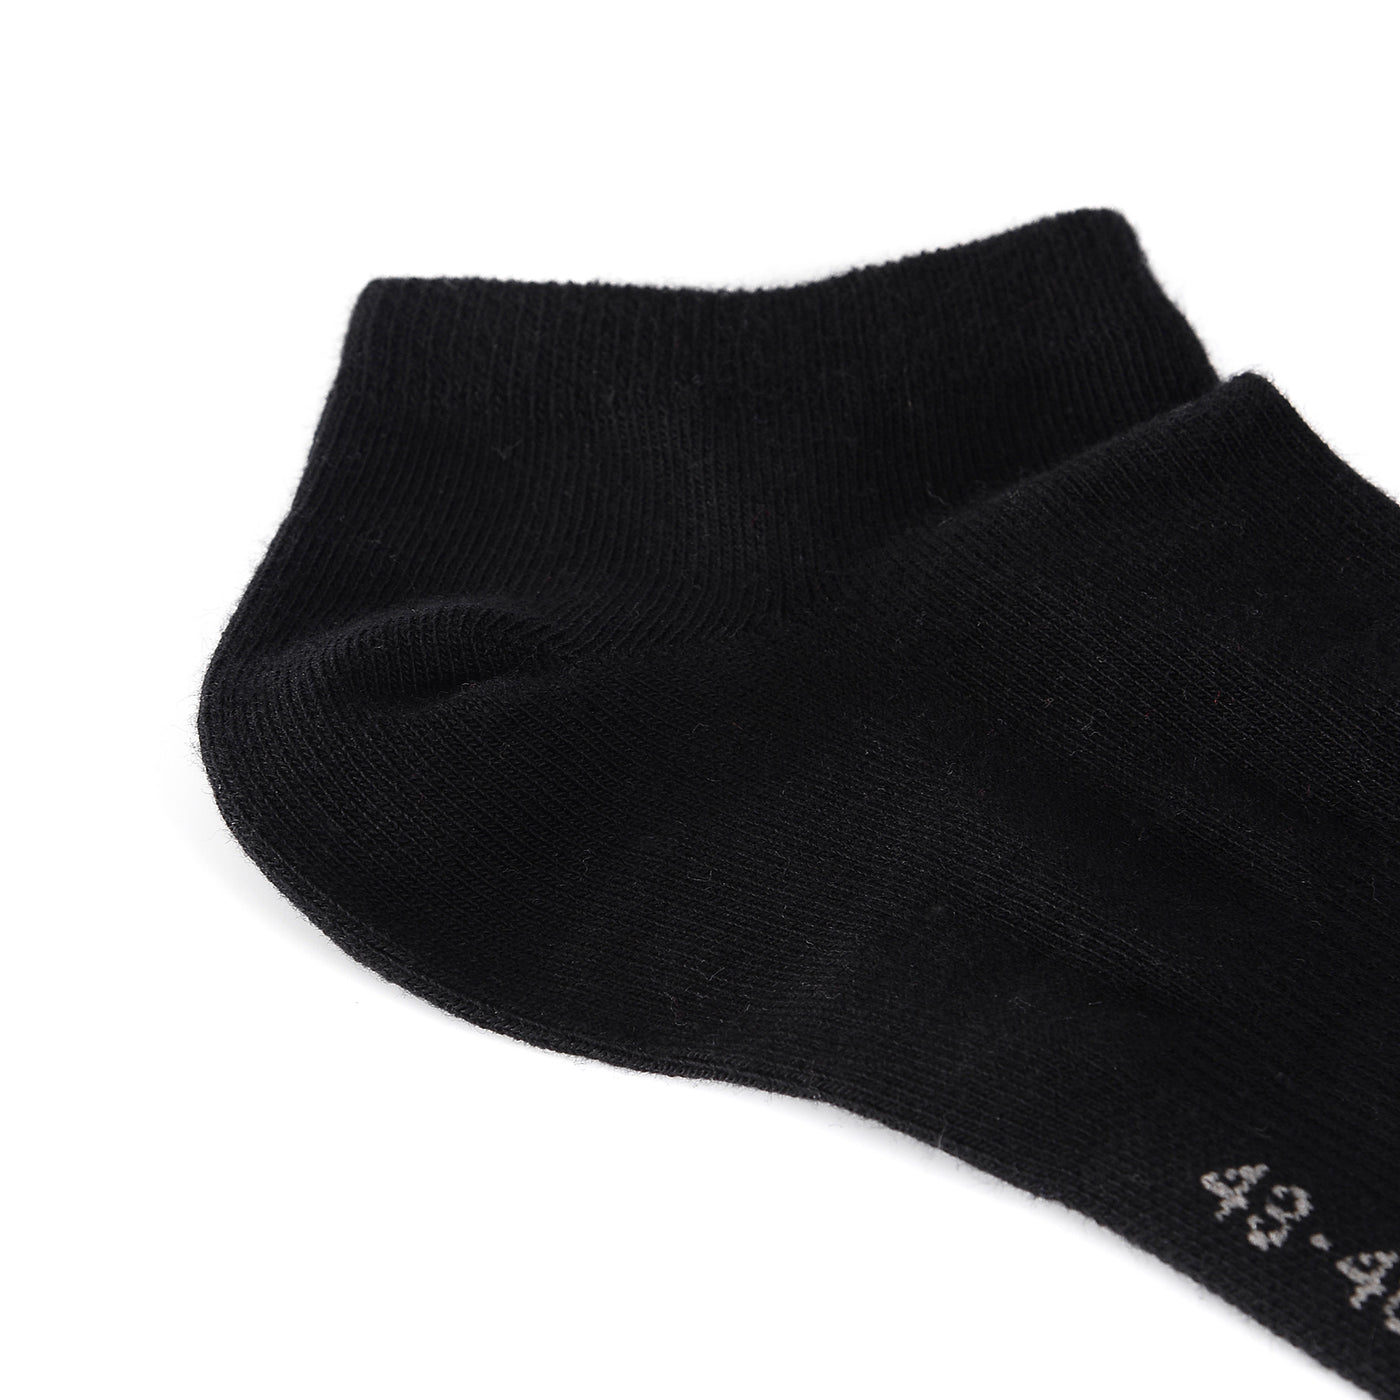 Laulax 6 paires de chaussettes d'entraînement pour soutien de la voûte plantaire en coton peigné fin, noir, taille UK 12-14/Europ 47-49